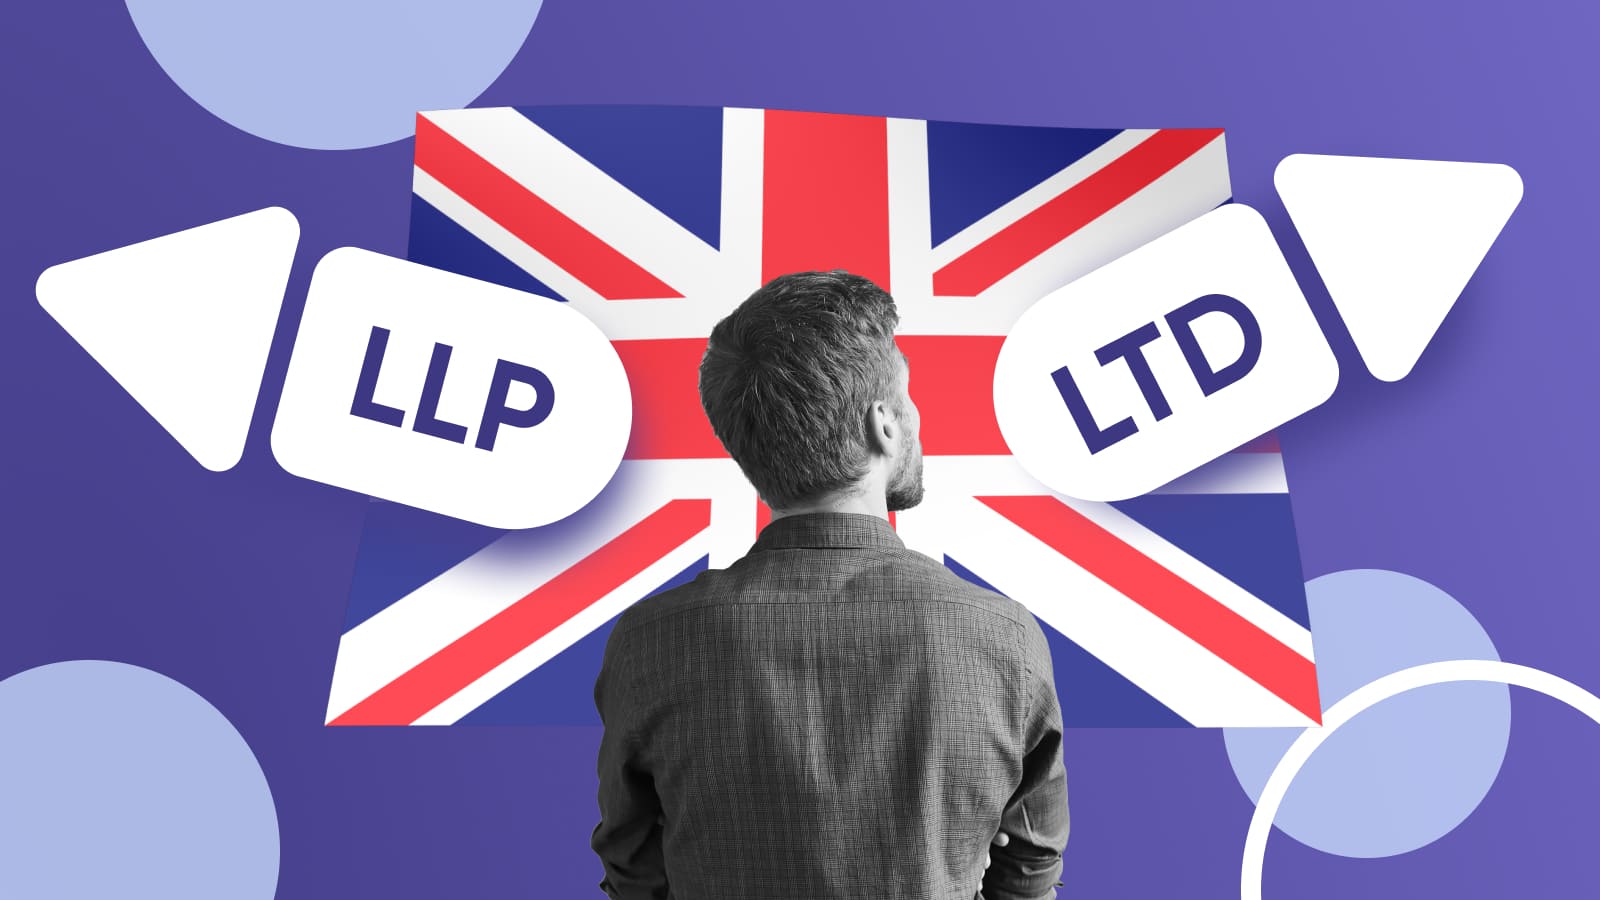 LLP и LTD – наиболее популярные формы для открытия бизнеса в Великобритании.